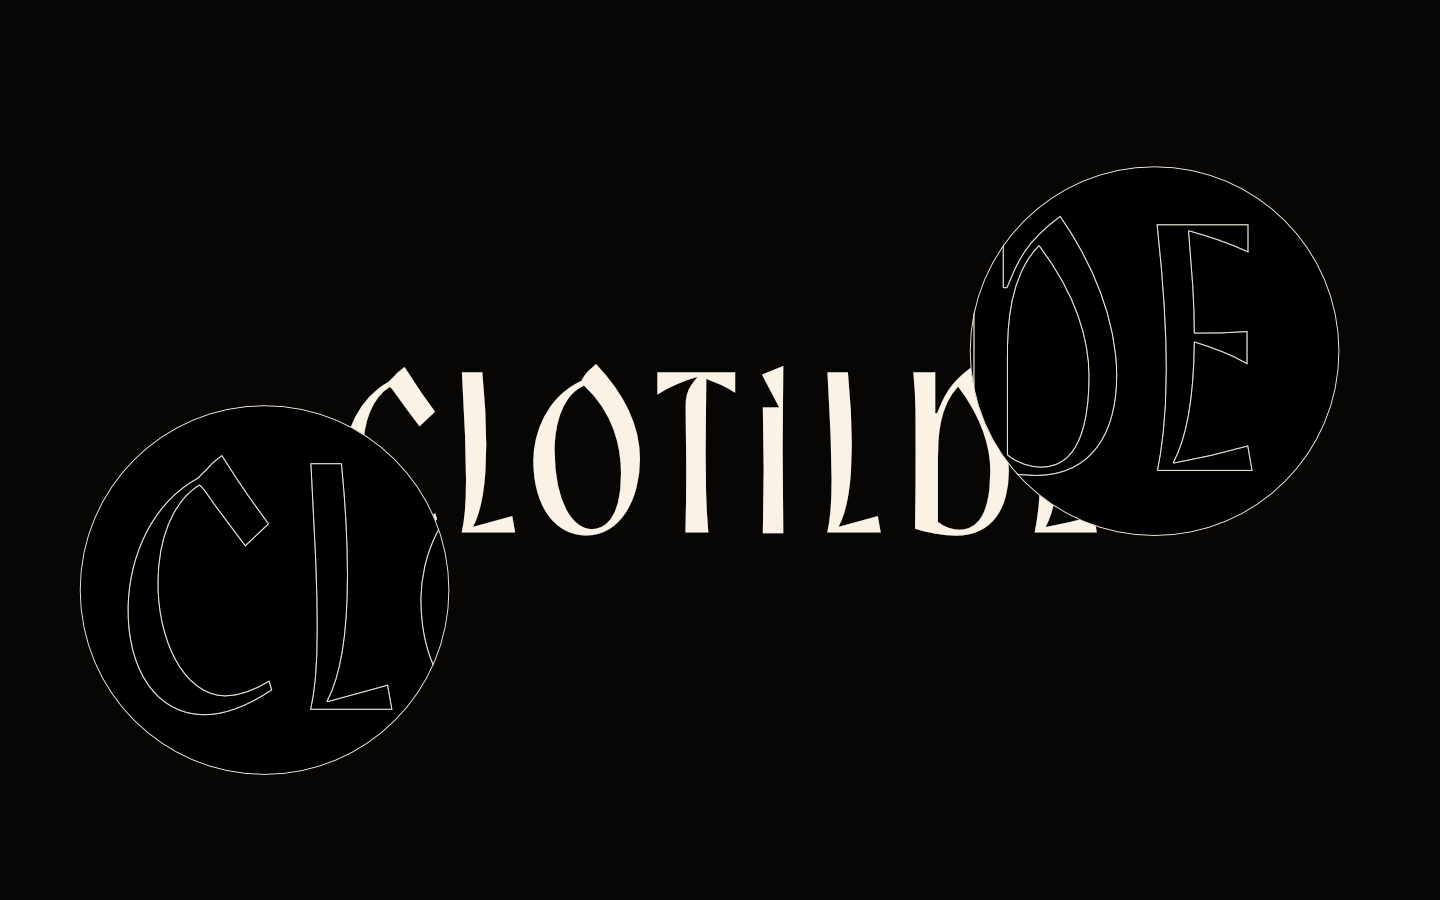 clotilde_slides_4.png